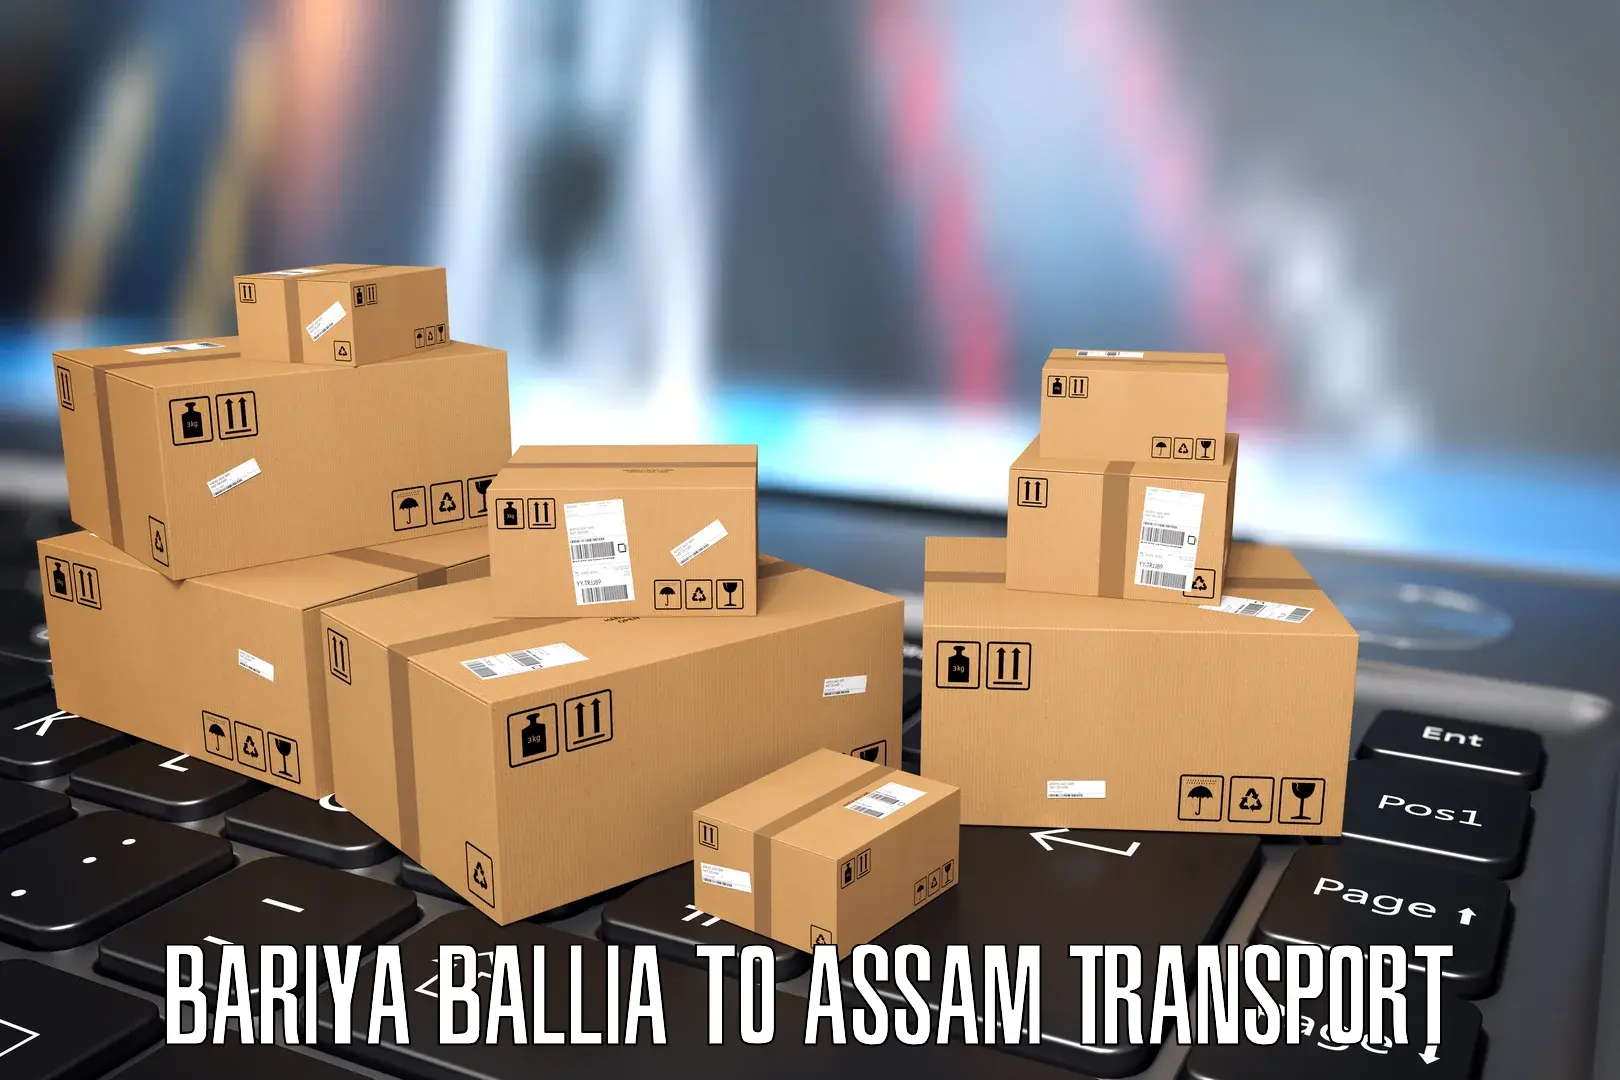 Furniture transport service Bariya Ballia to Sarupathar